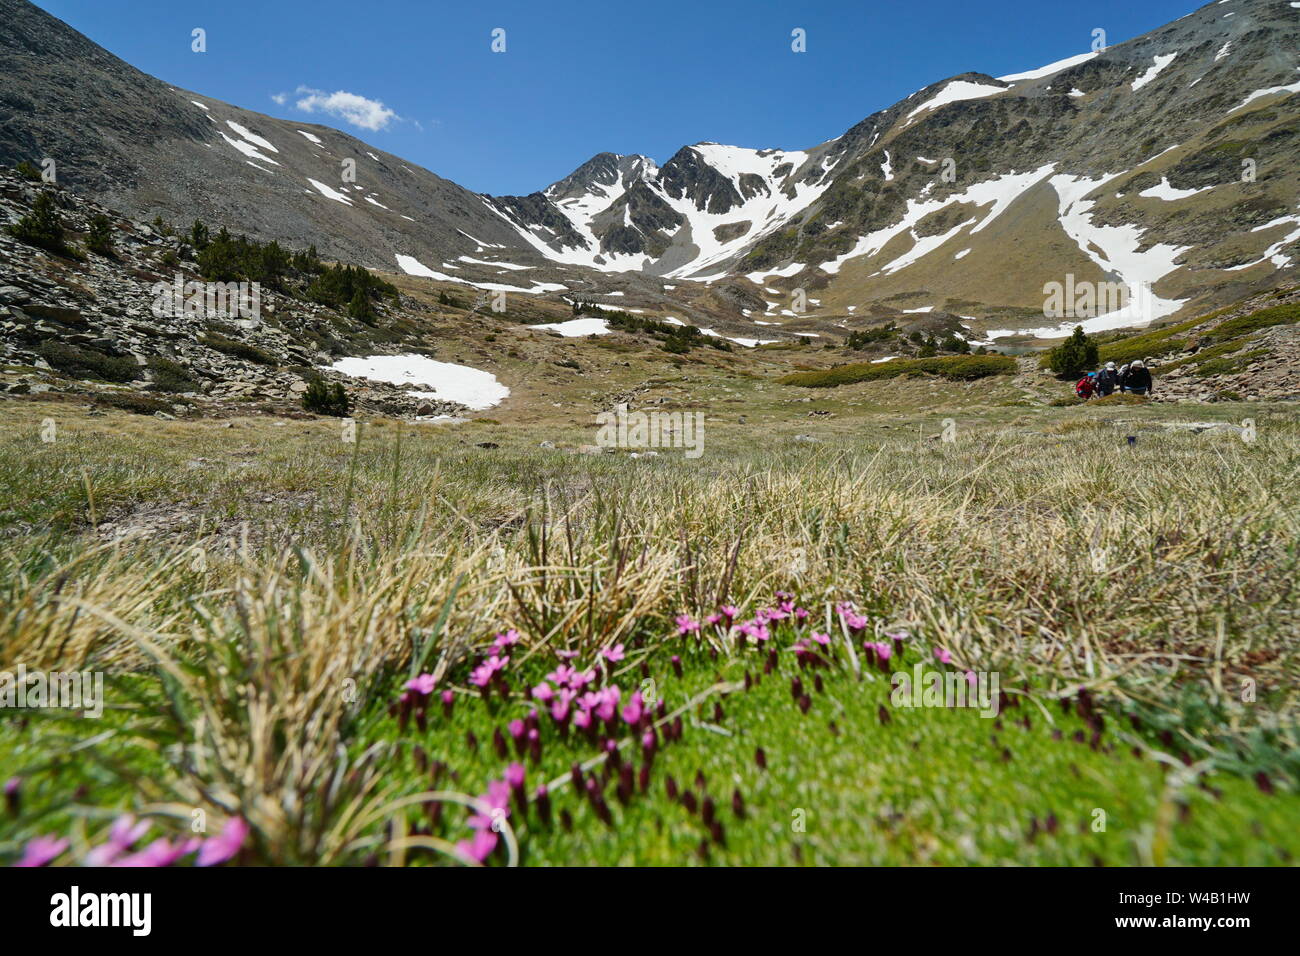 Paisaje de montaña el macizo de Carlit con flores en primer plano, de Francia, parque natural de los Pirineos Catalanes, Pirineos Orientales Foto de stock